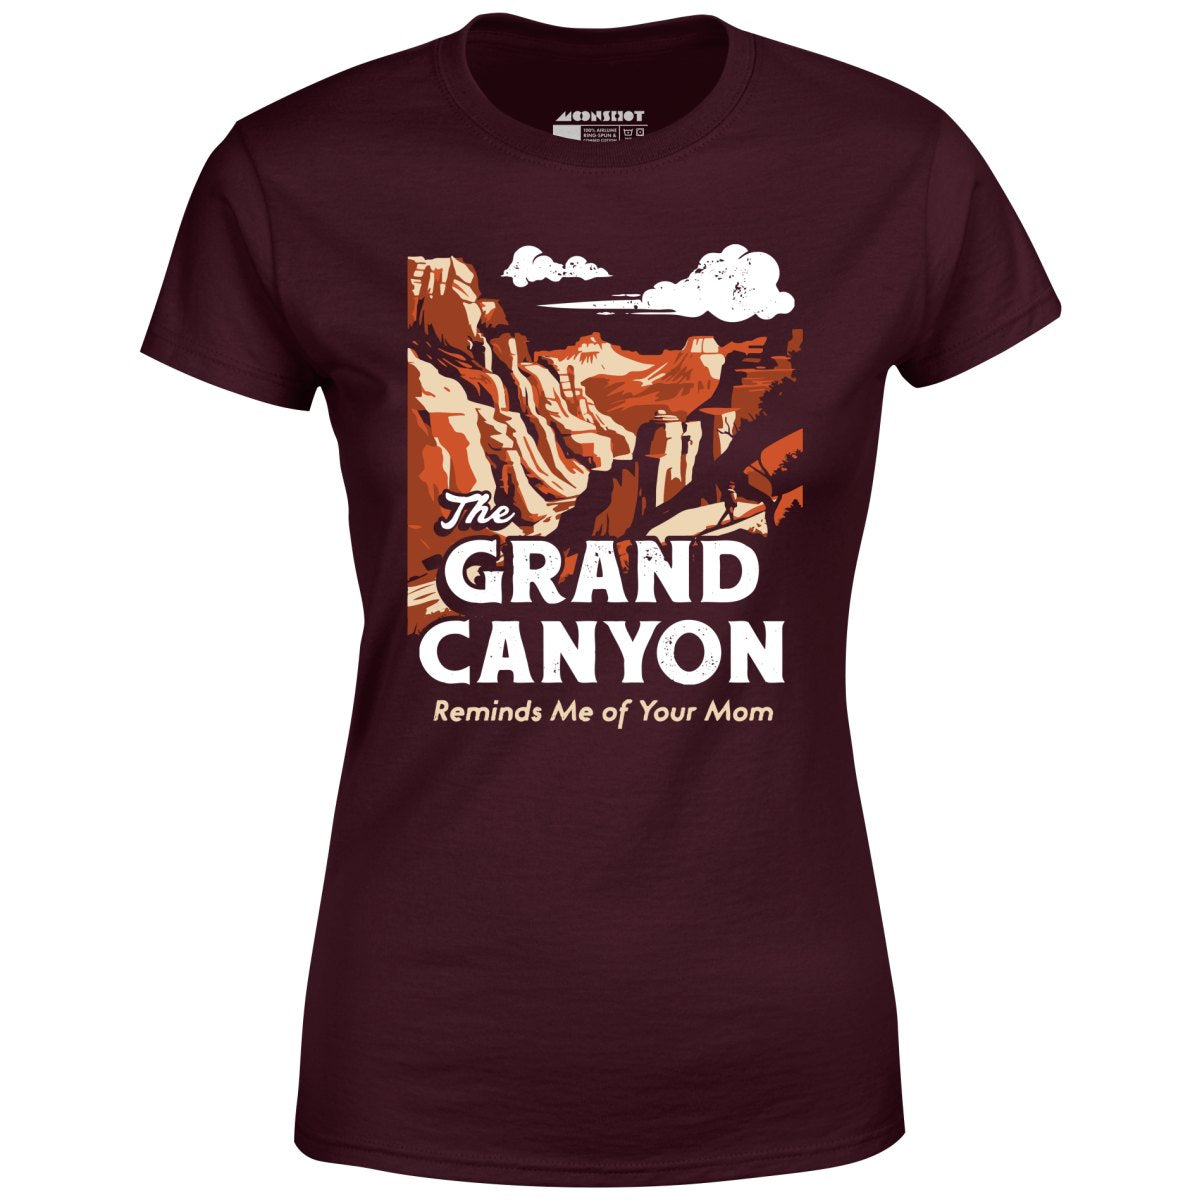 Grand Canyon - Women's T-Shirt